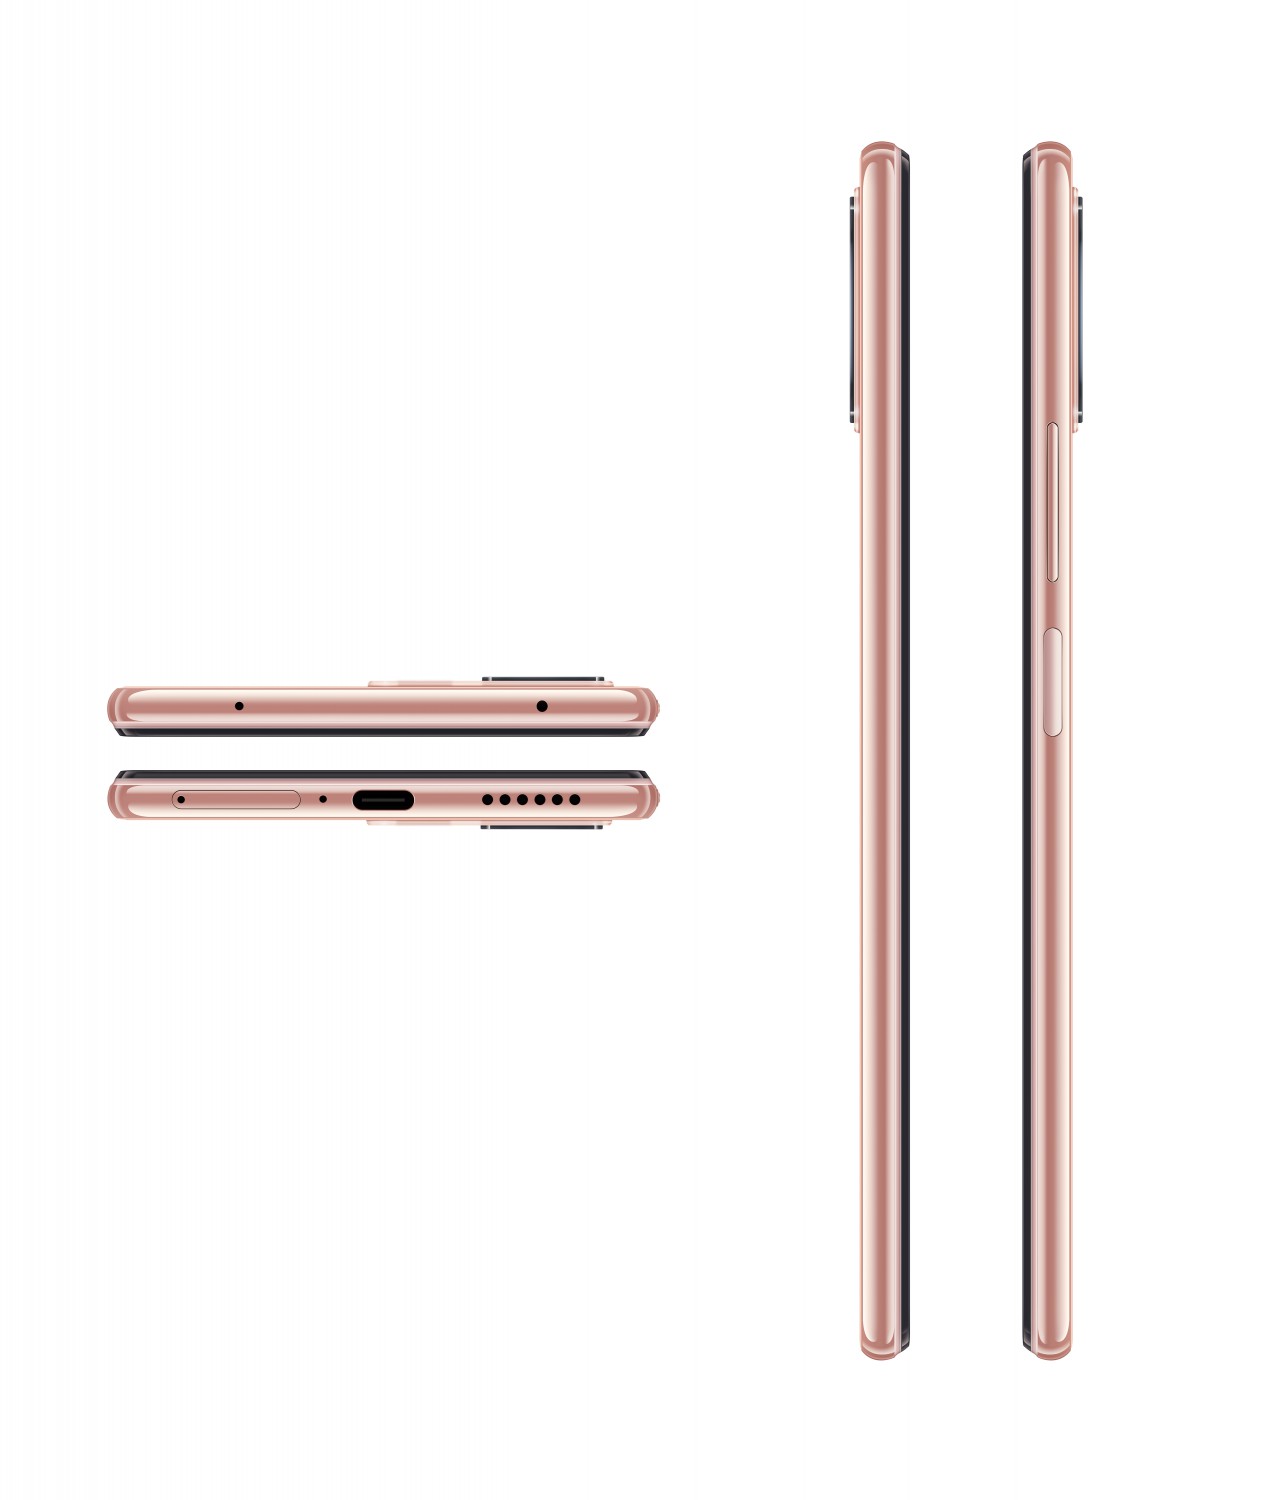 Xiaomi Mi 11 lite 5G NE 8GB/256GB růžová